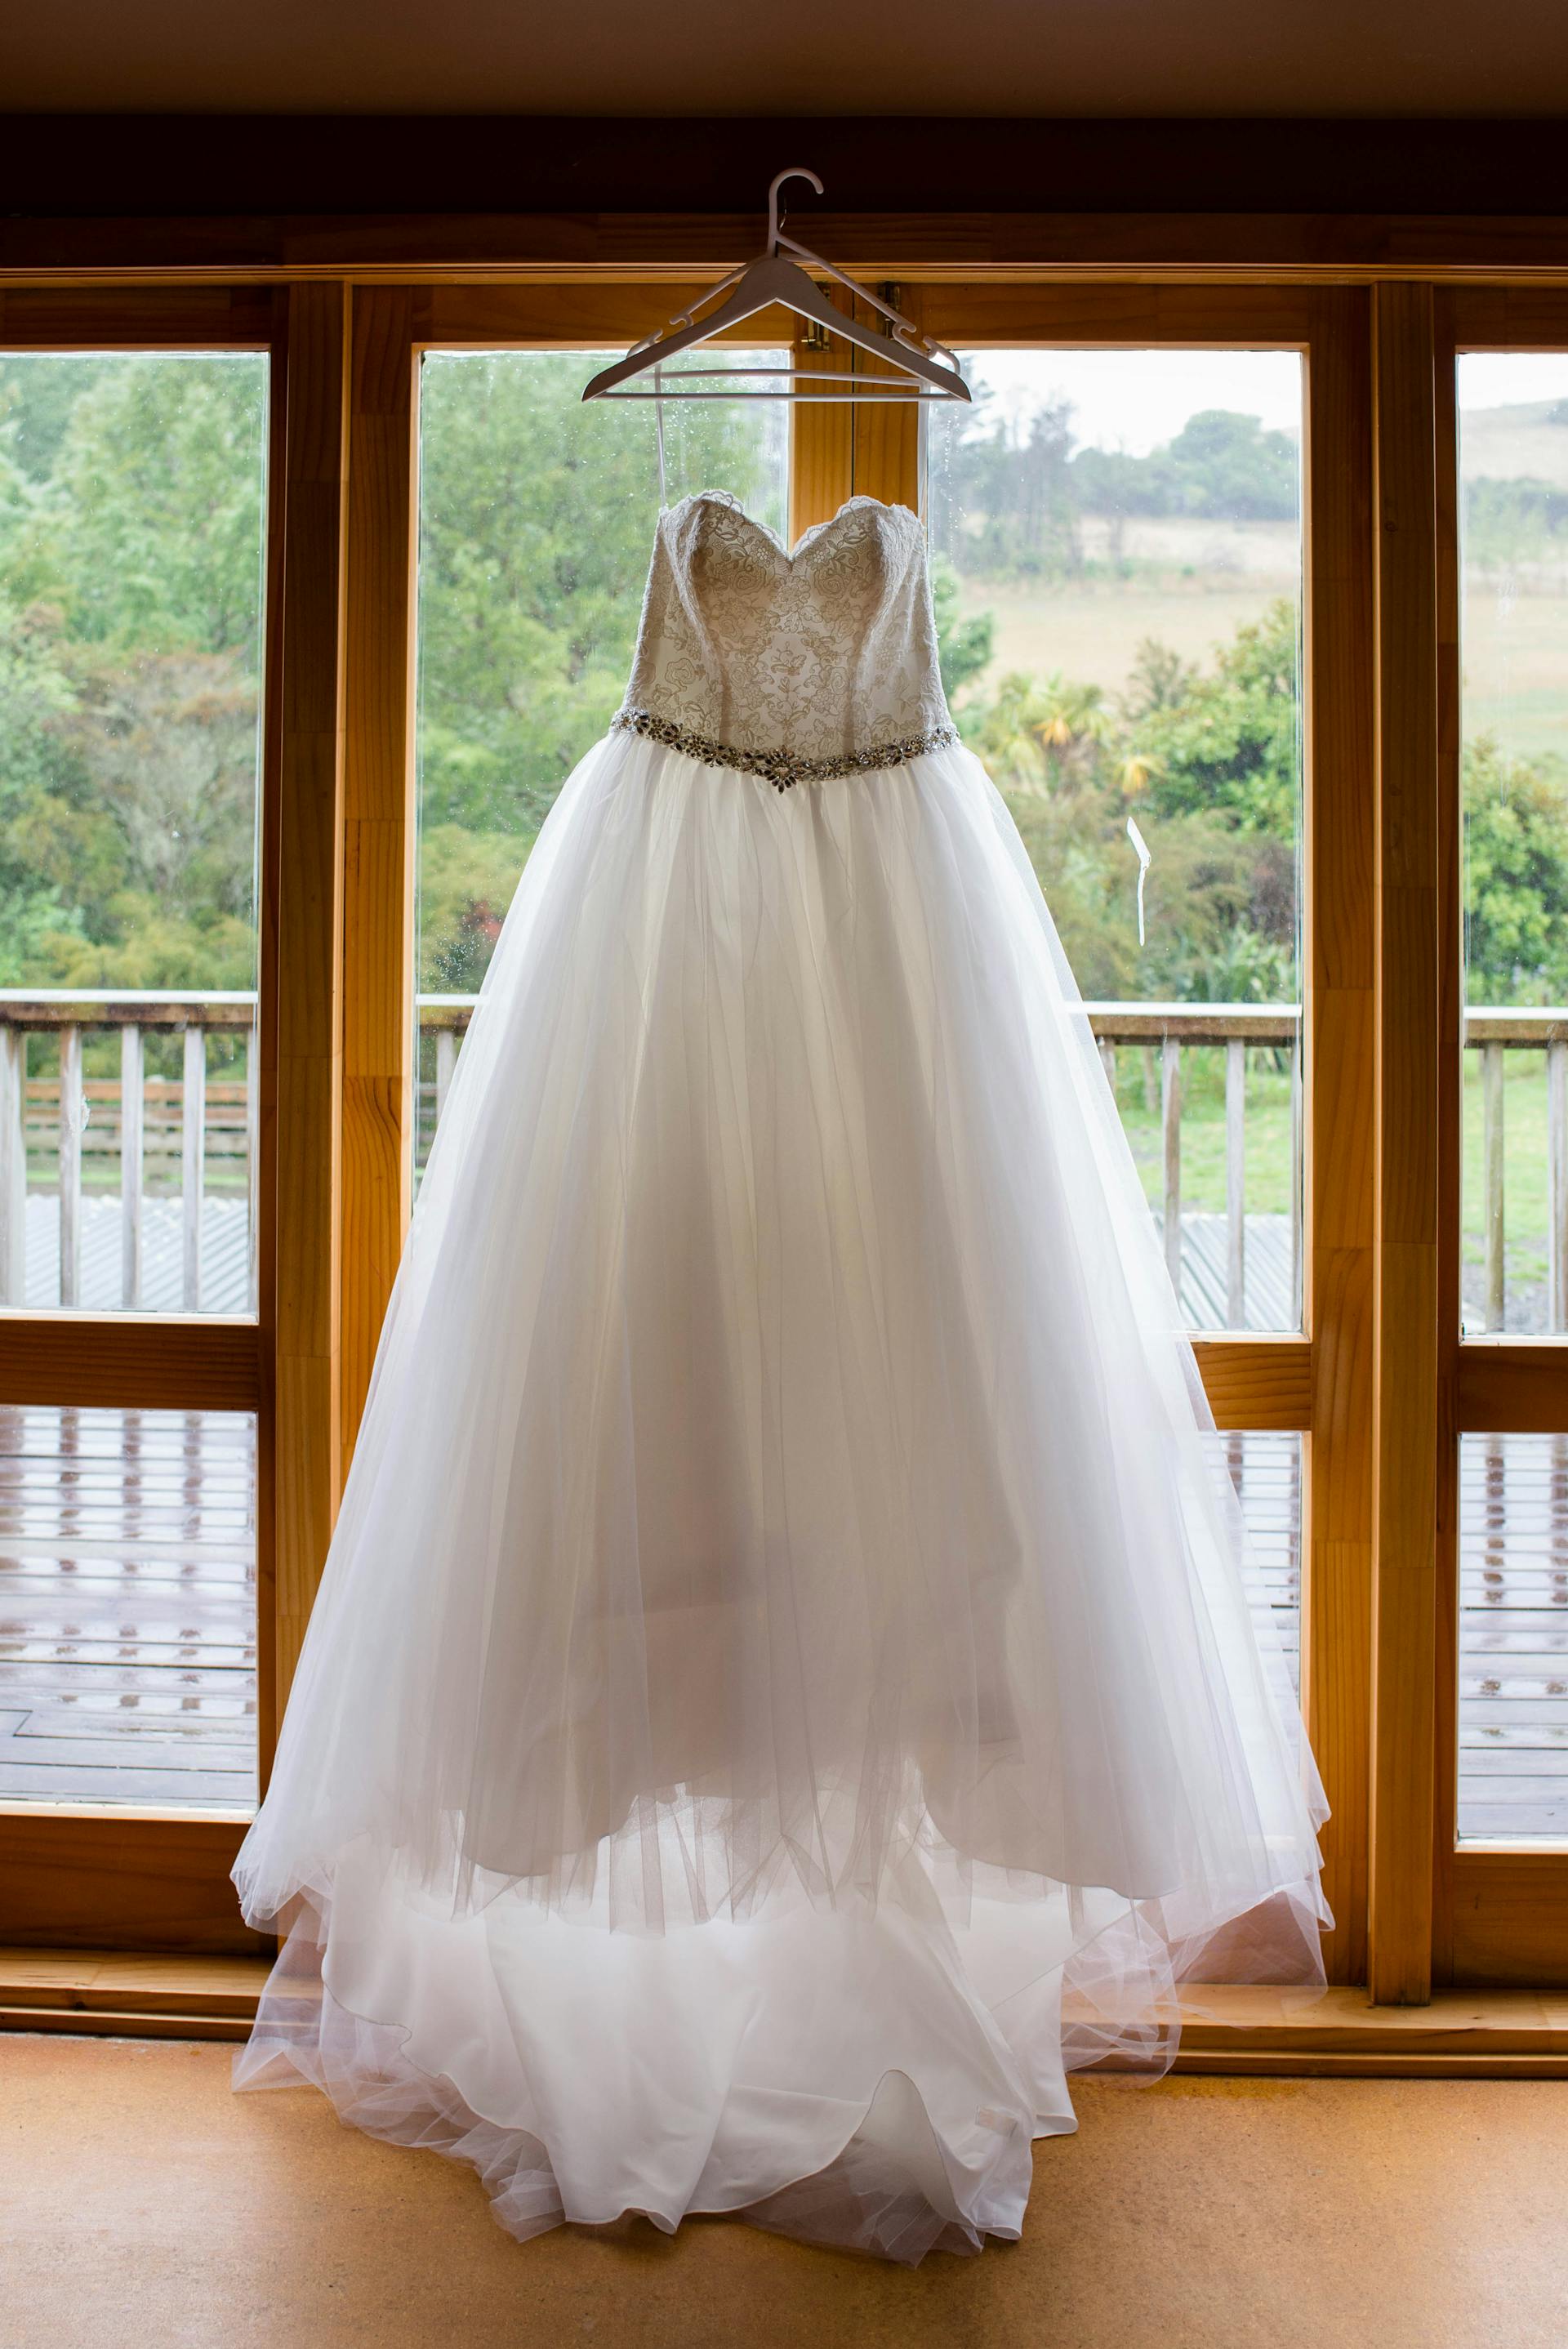 Ein Hochzeitskleid, das vor einem Fenster hängt | Quelle: Pexels